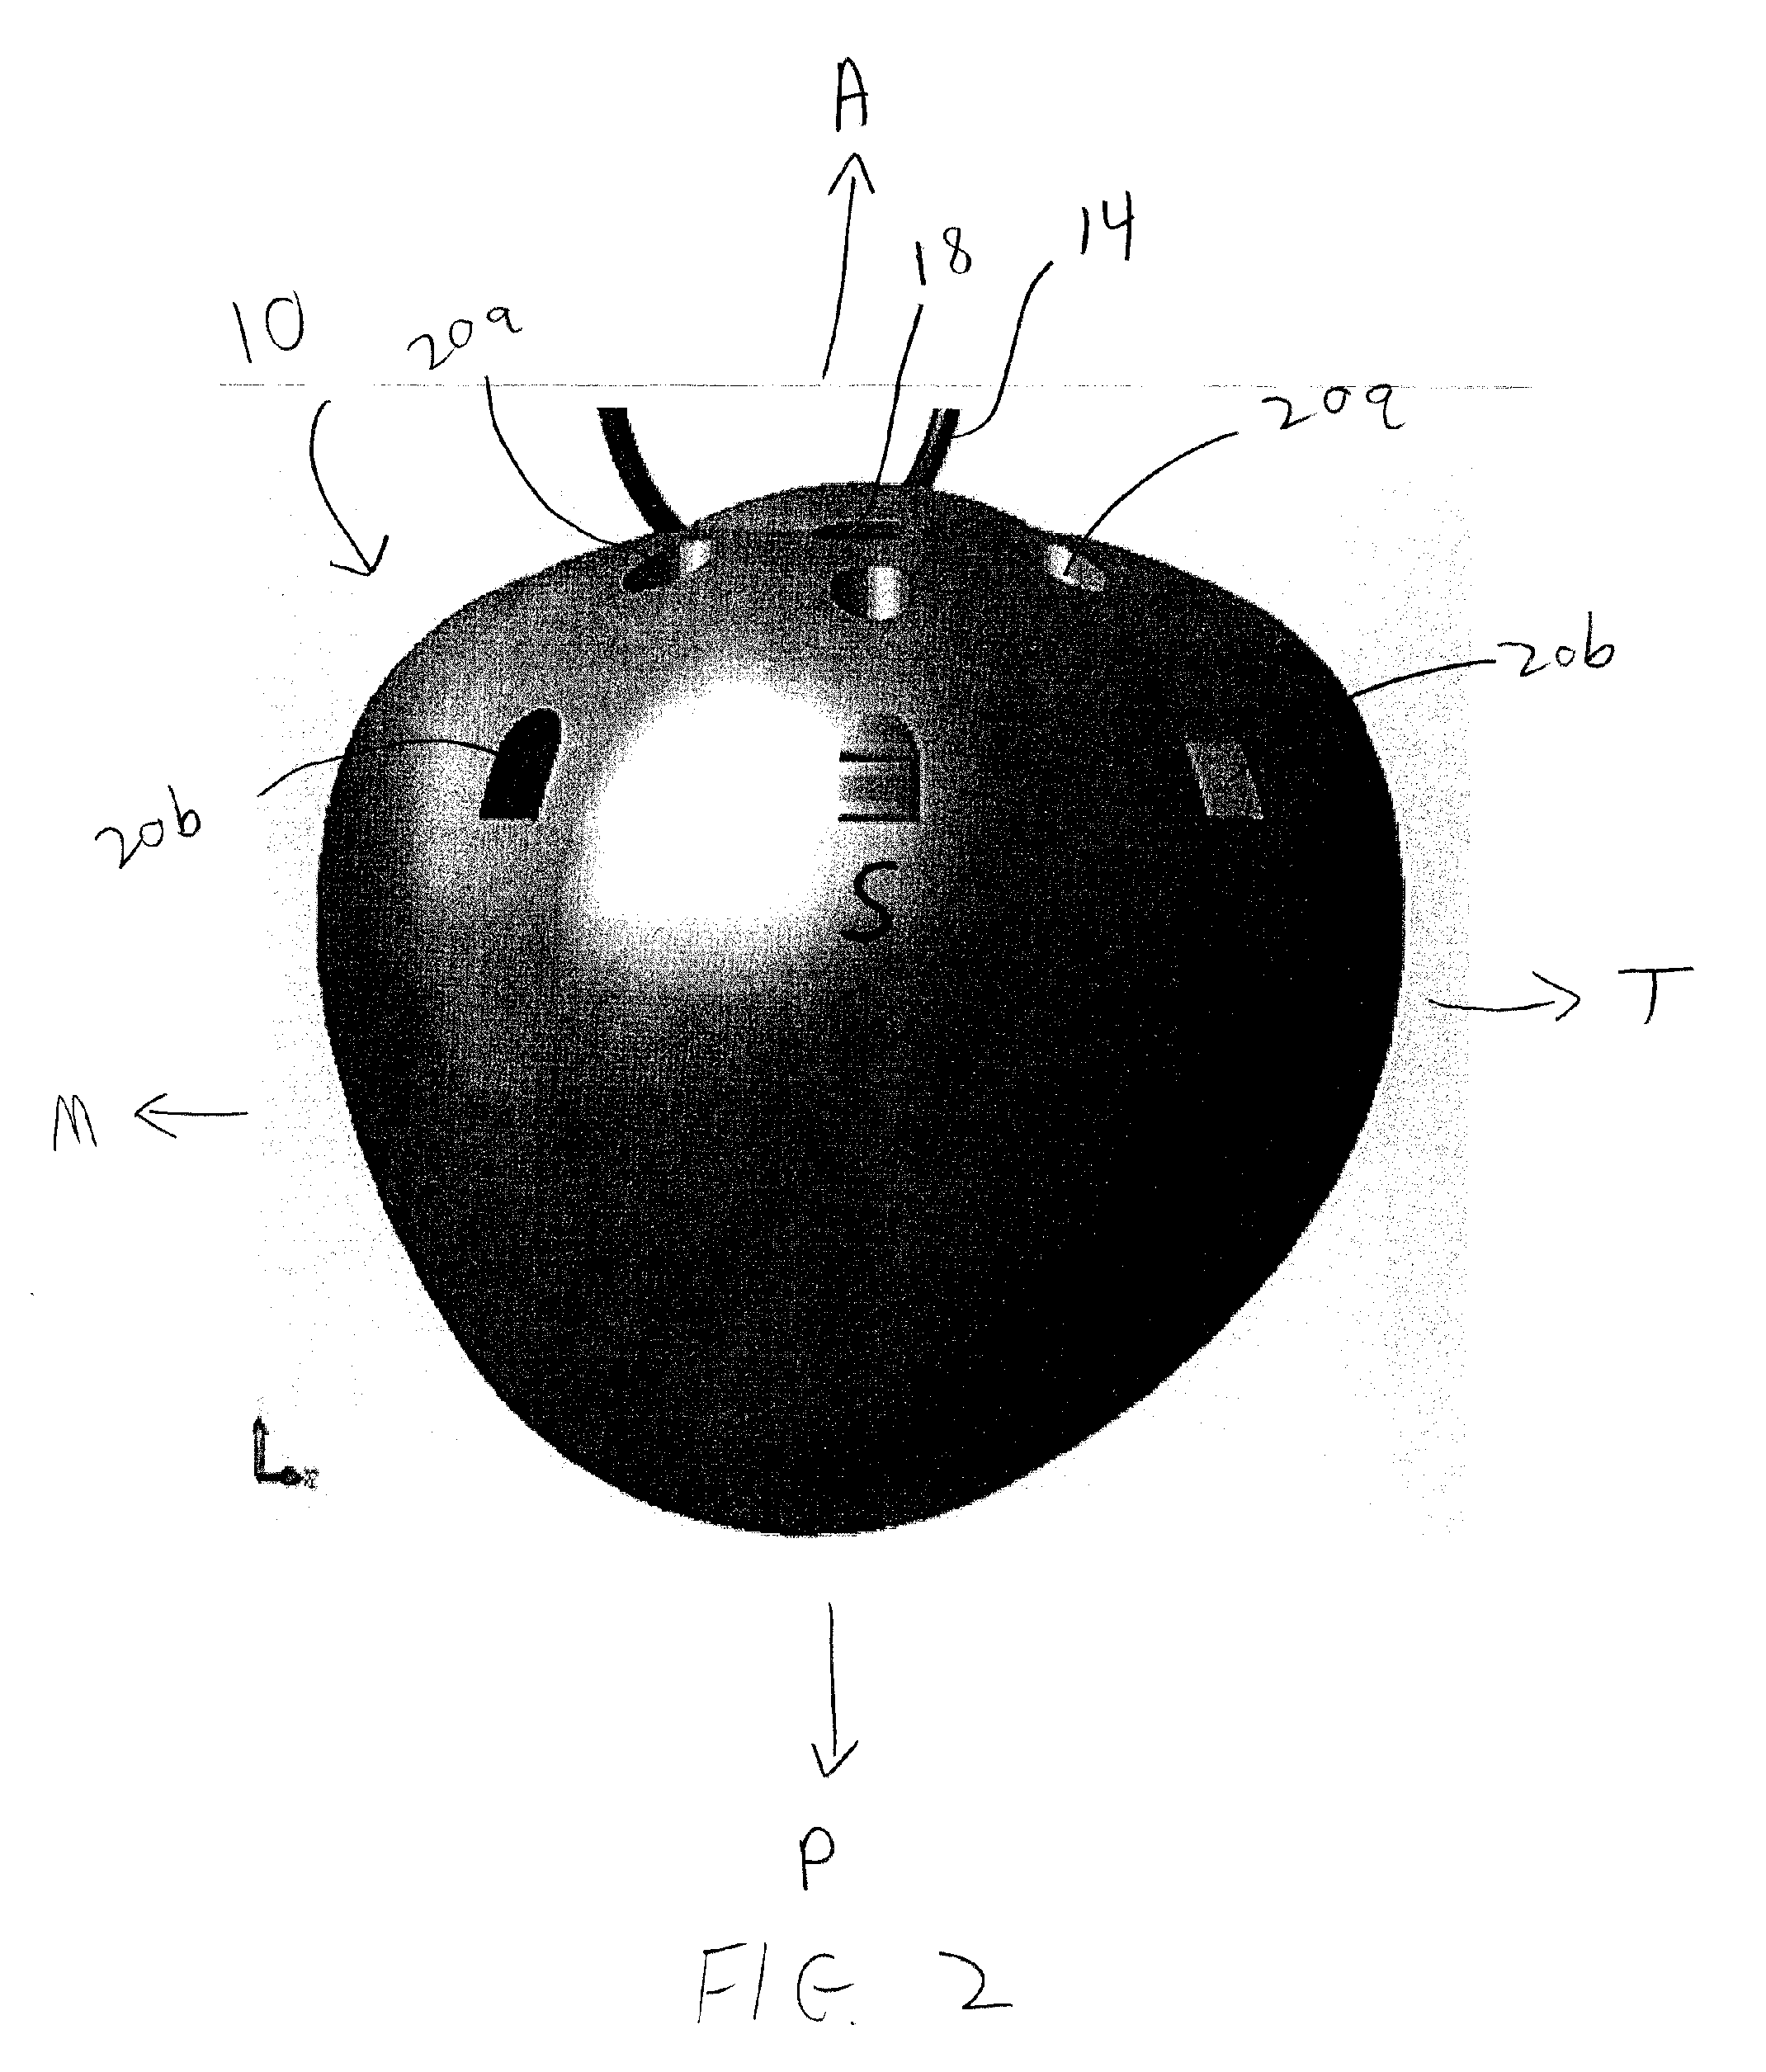 Quasi-spherical orbital implant